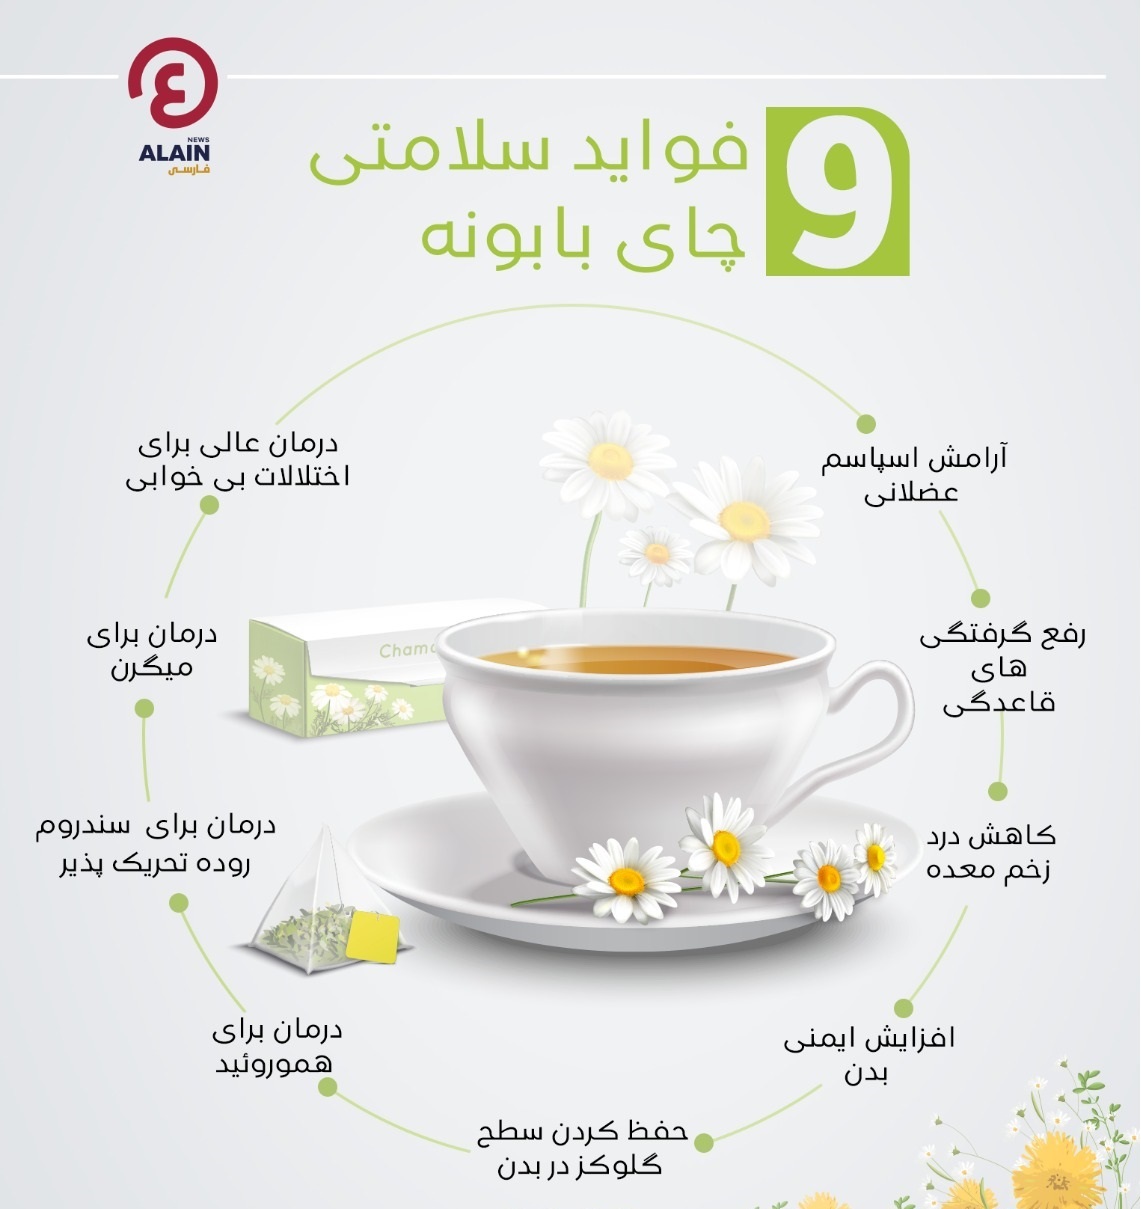 ۹ فایده سلامتی چای بابونه +اینفوگرافی